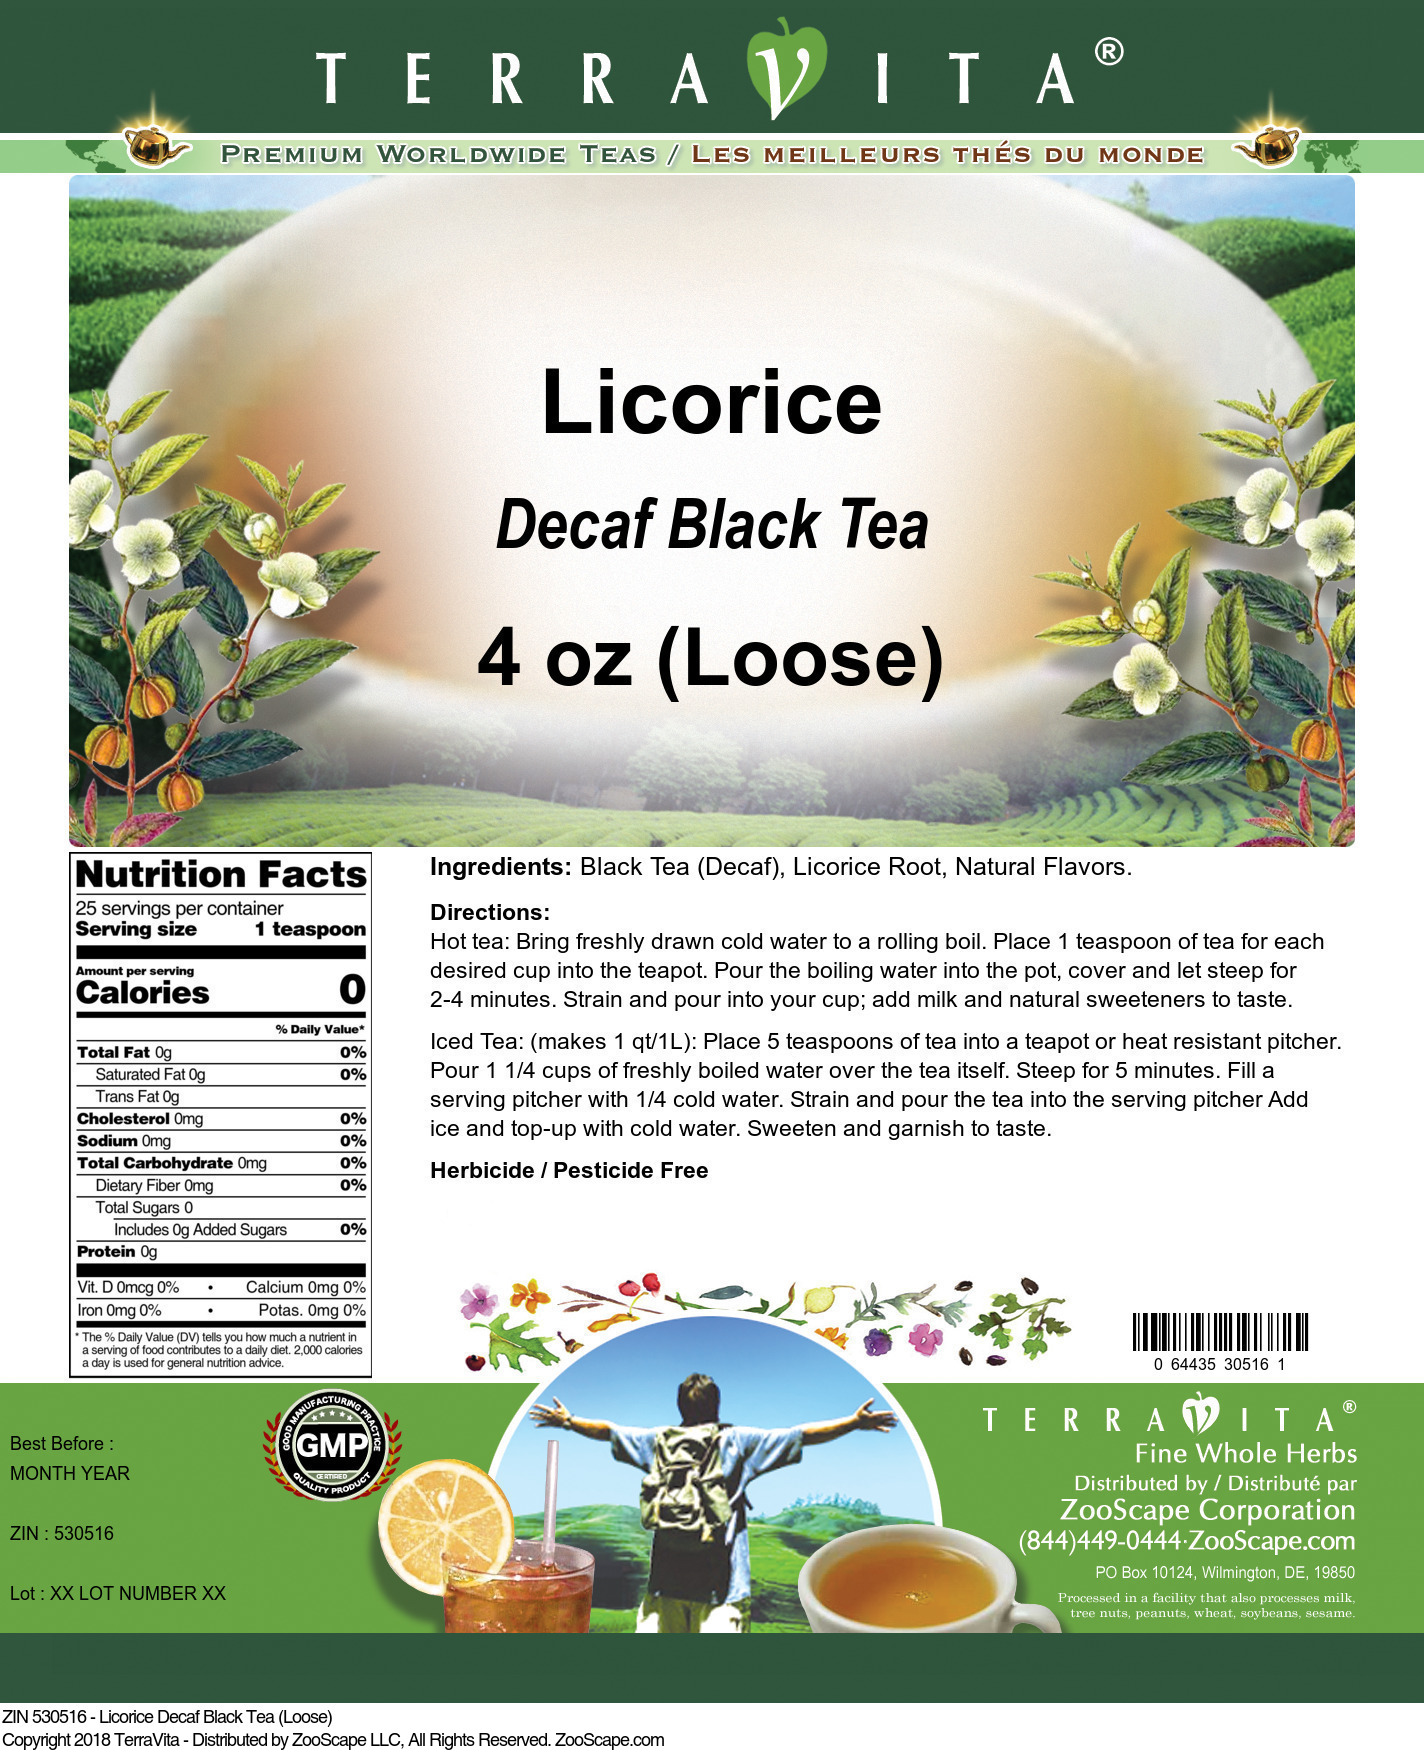 Licorice Decaf Black Tea (Loose) - Label